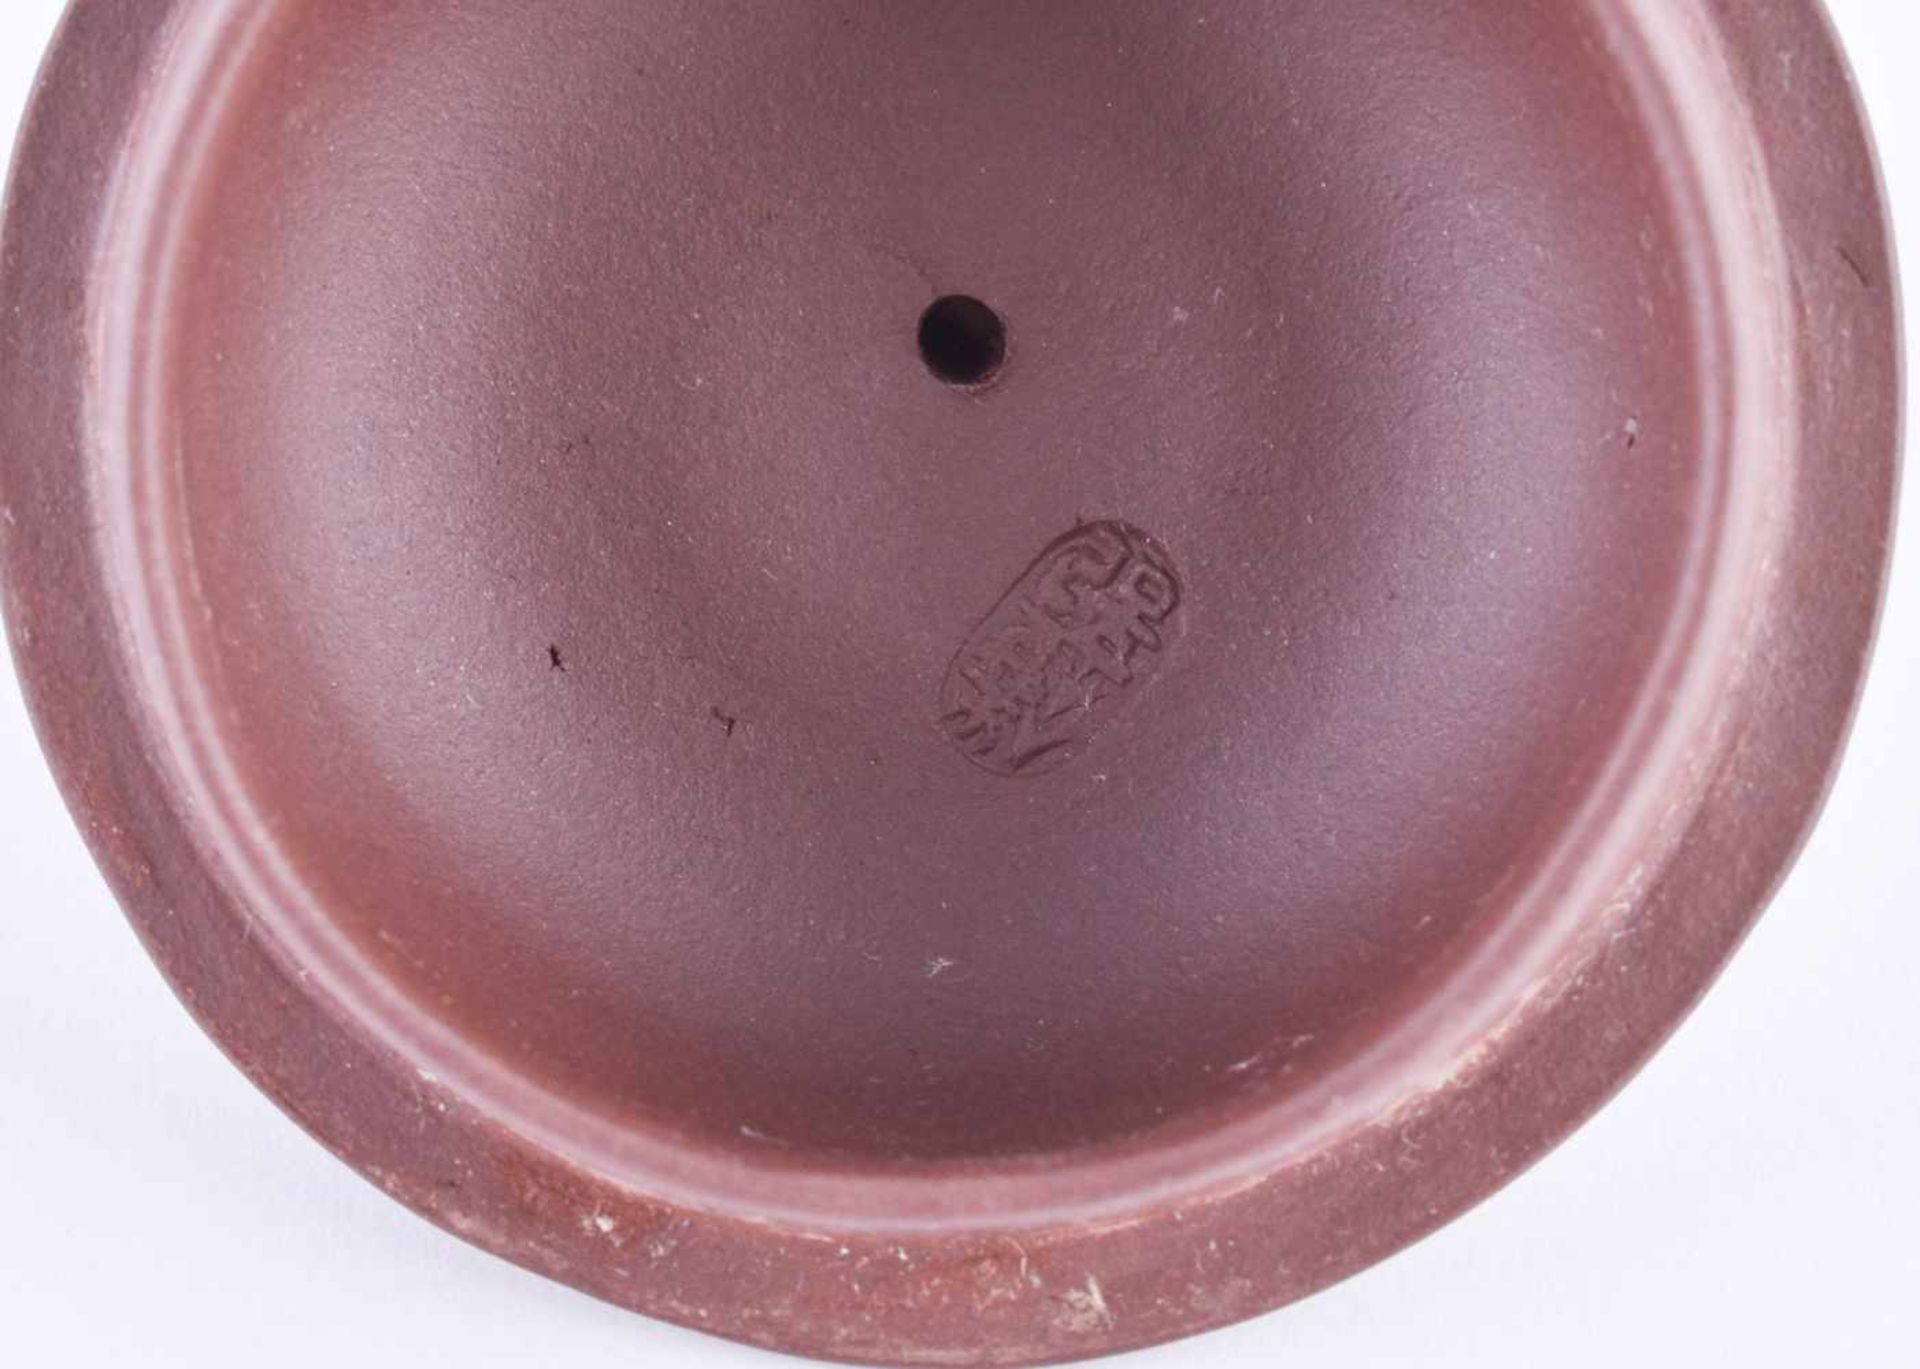 Zisha-Teekanne Chinaumlaufend mit Durchbruch-Dekor (Sägearbeit), gemarkt, H: 13,5 cmZisha tea pot - Image 4 of 4